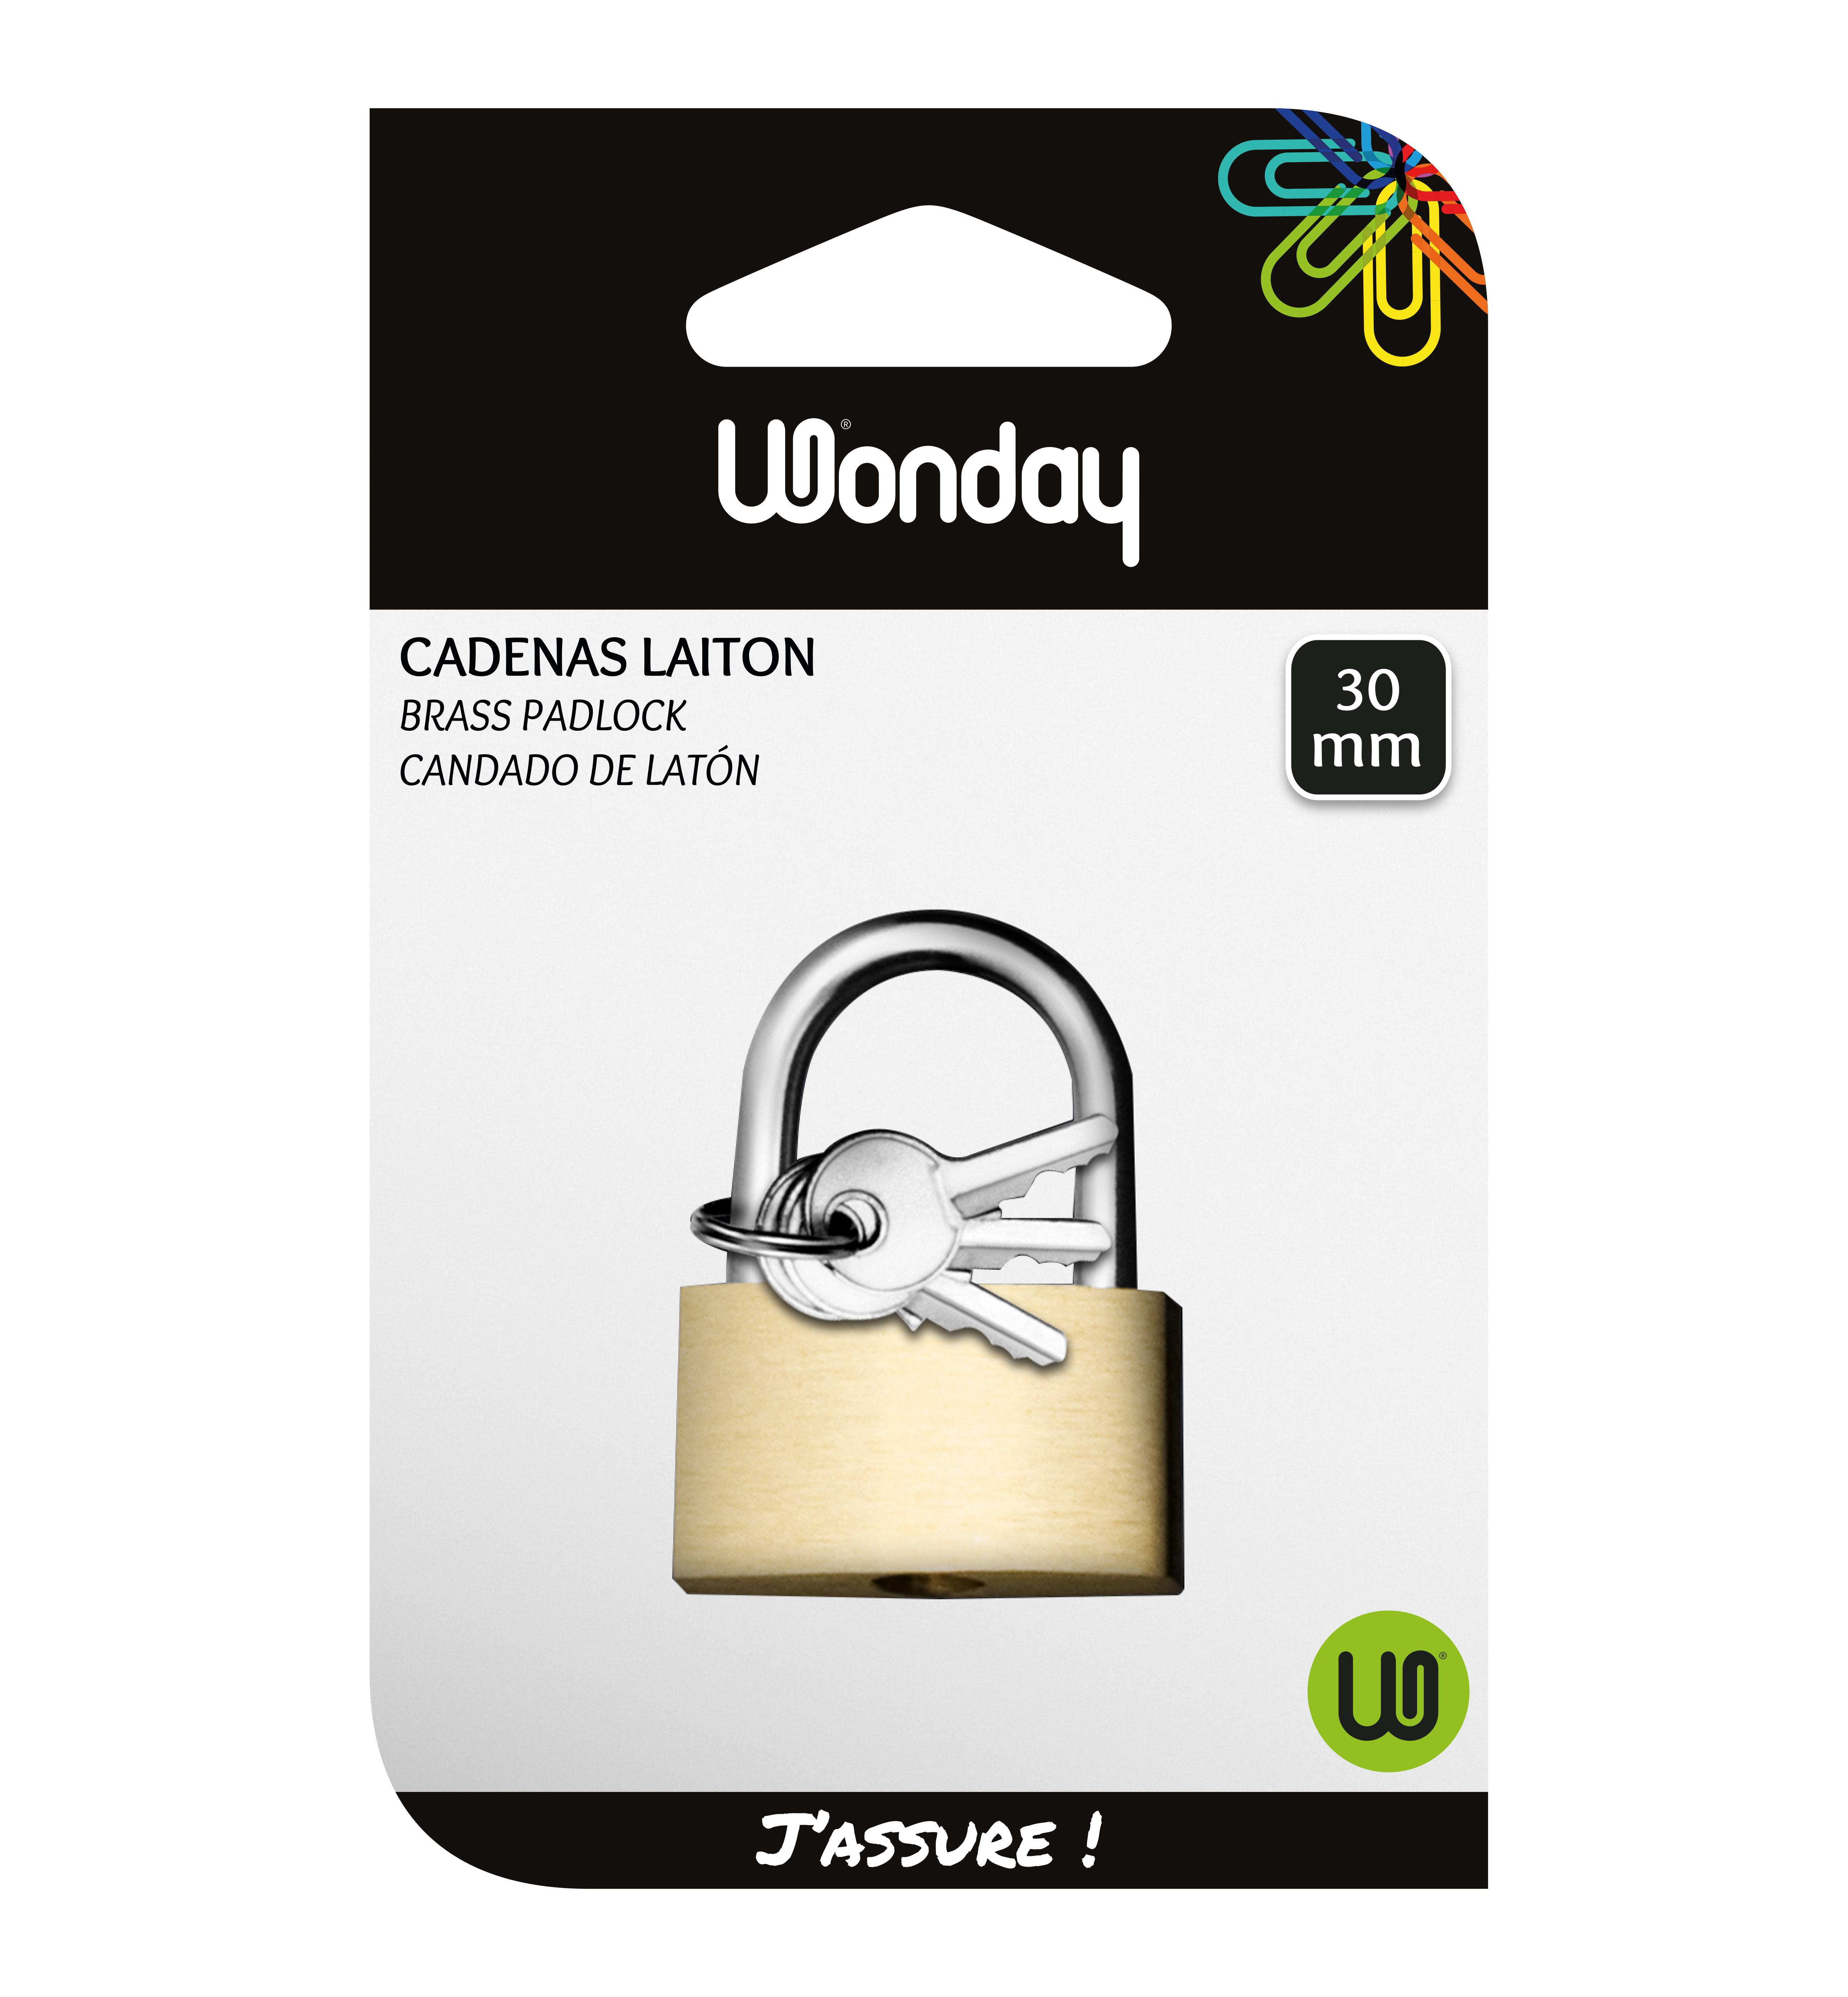 Wonday - Cadenas laiton à clé - 30 mm